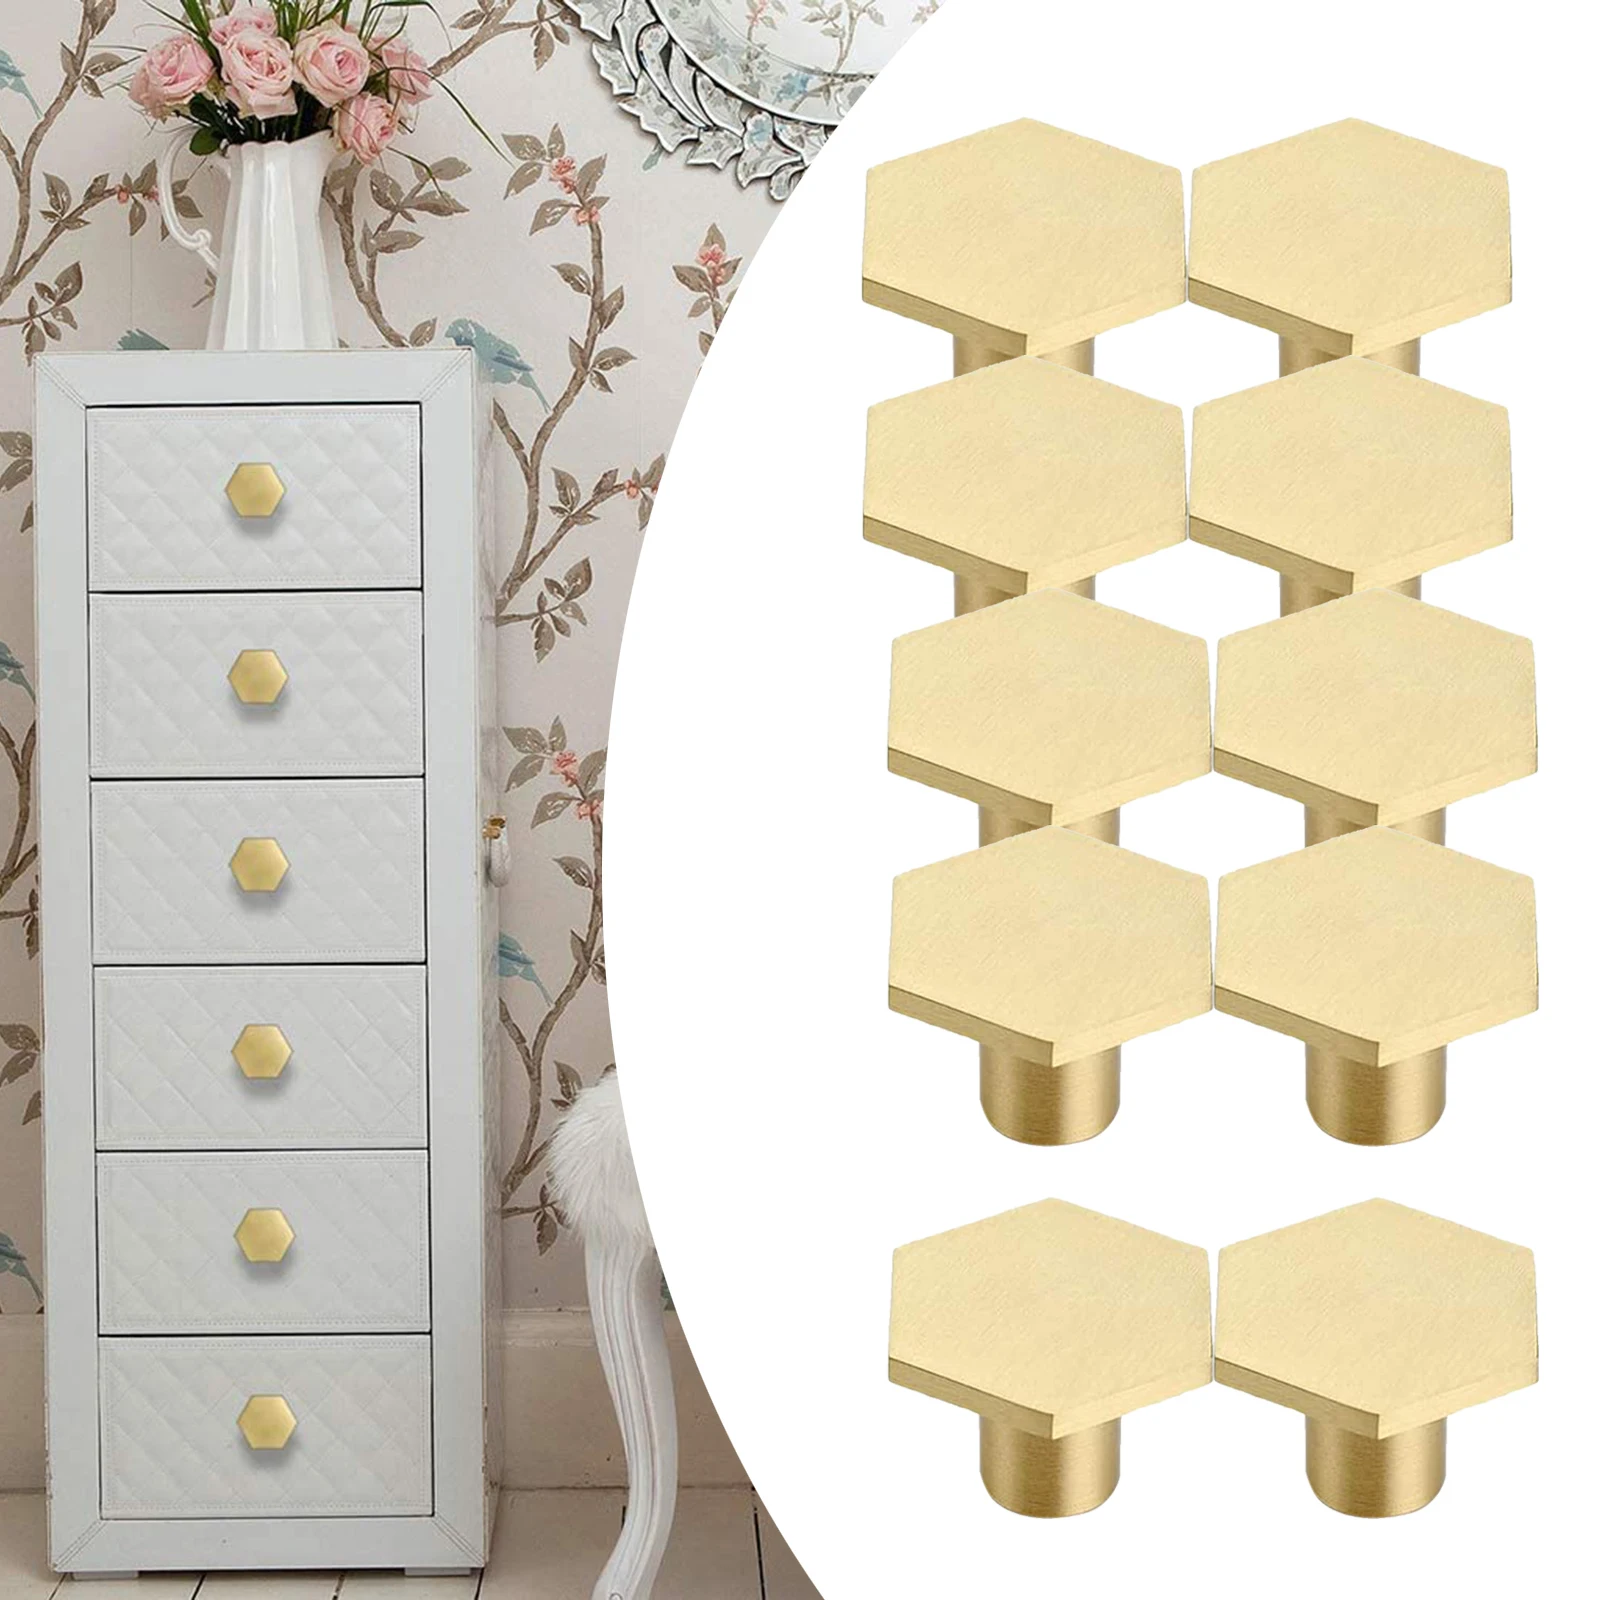 Brass Furniture Round Handle Of Drawer Wardrobe Door Knob Handles Dresser Brass Pulls Cabinet Handles Set of 10pcs